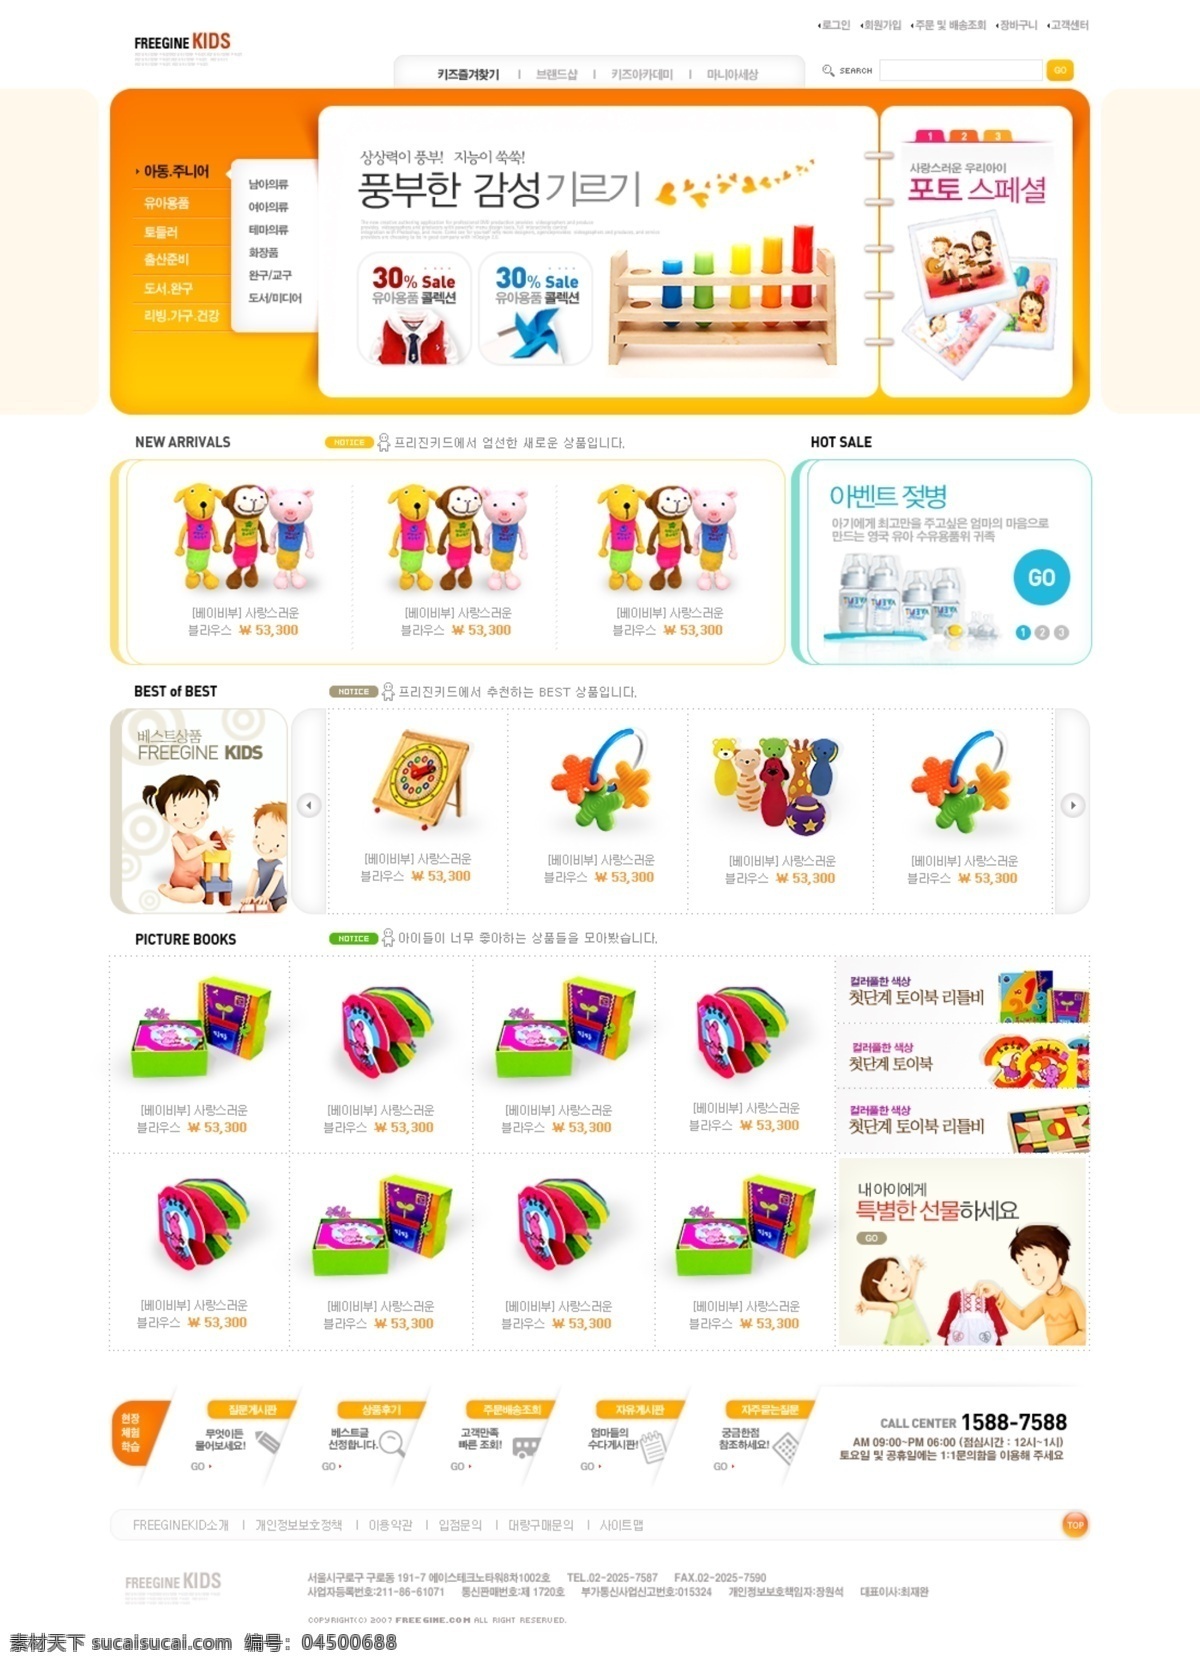 橙色 系 韩国 网页设计 模板 橙色系 韩国网页 设计模板 白色